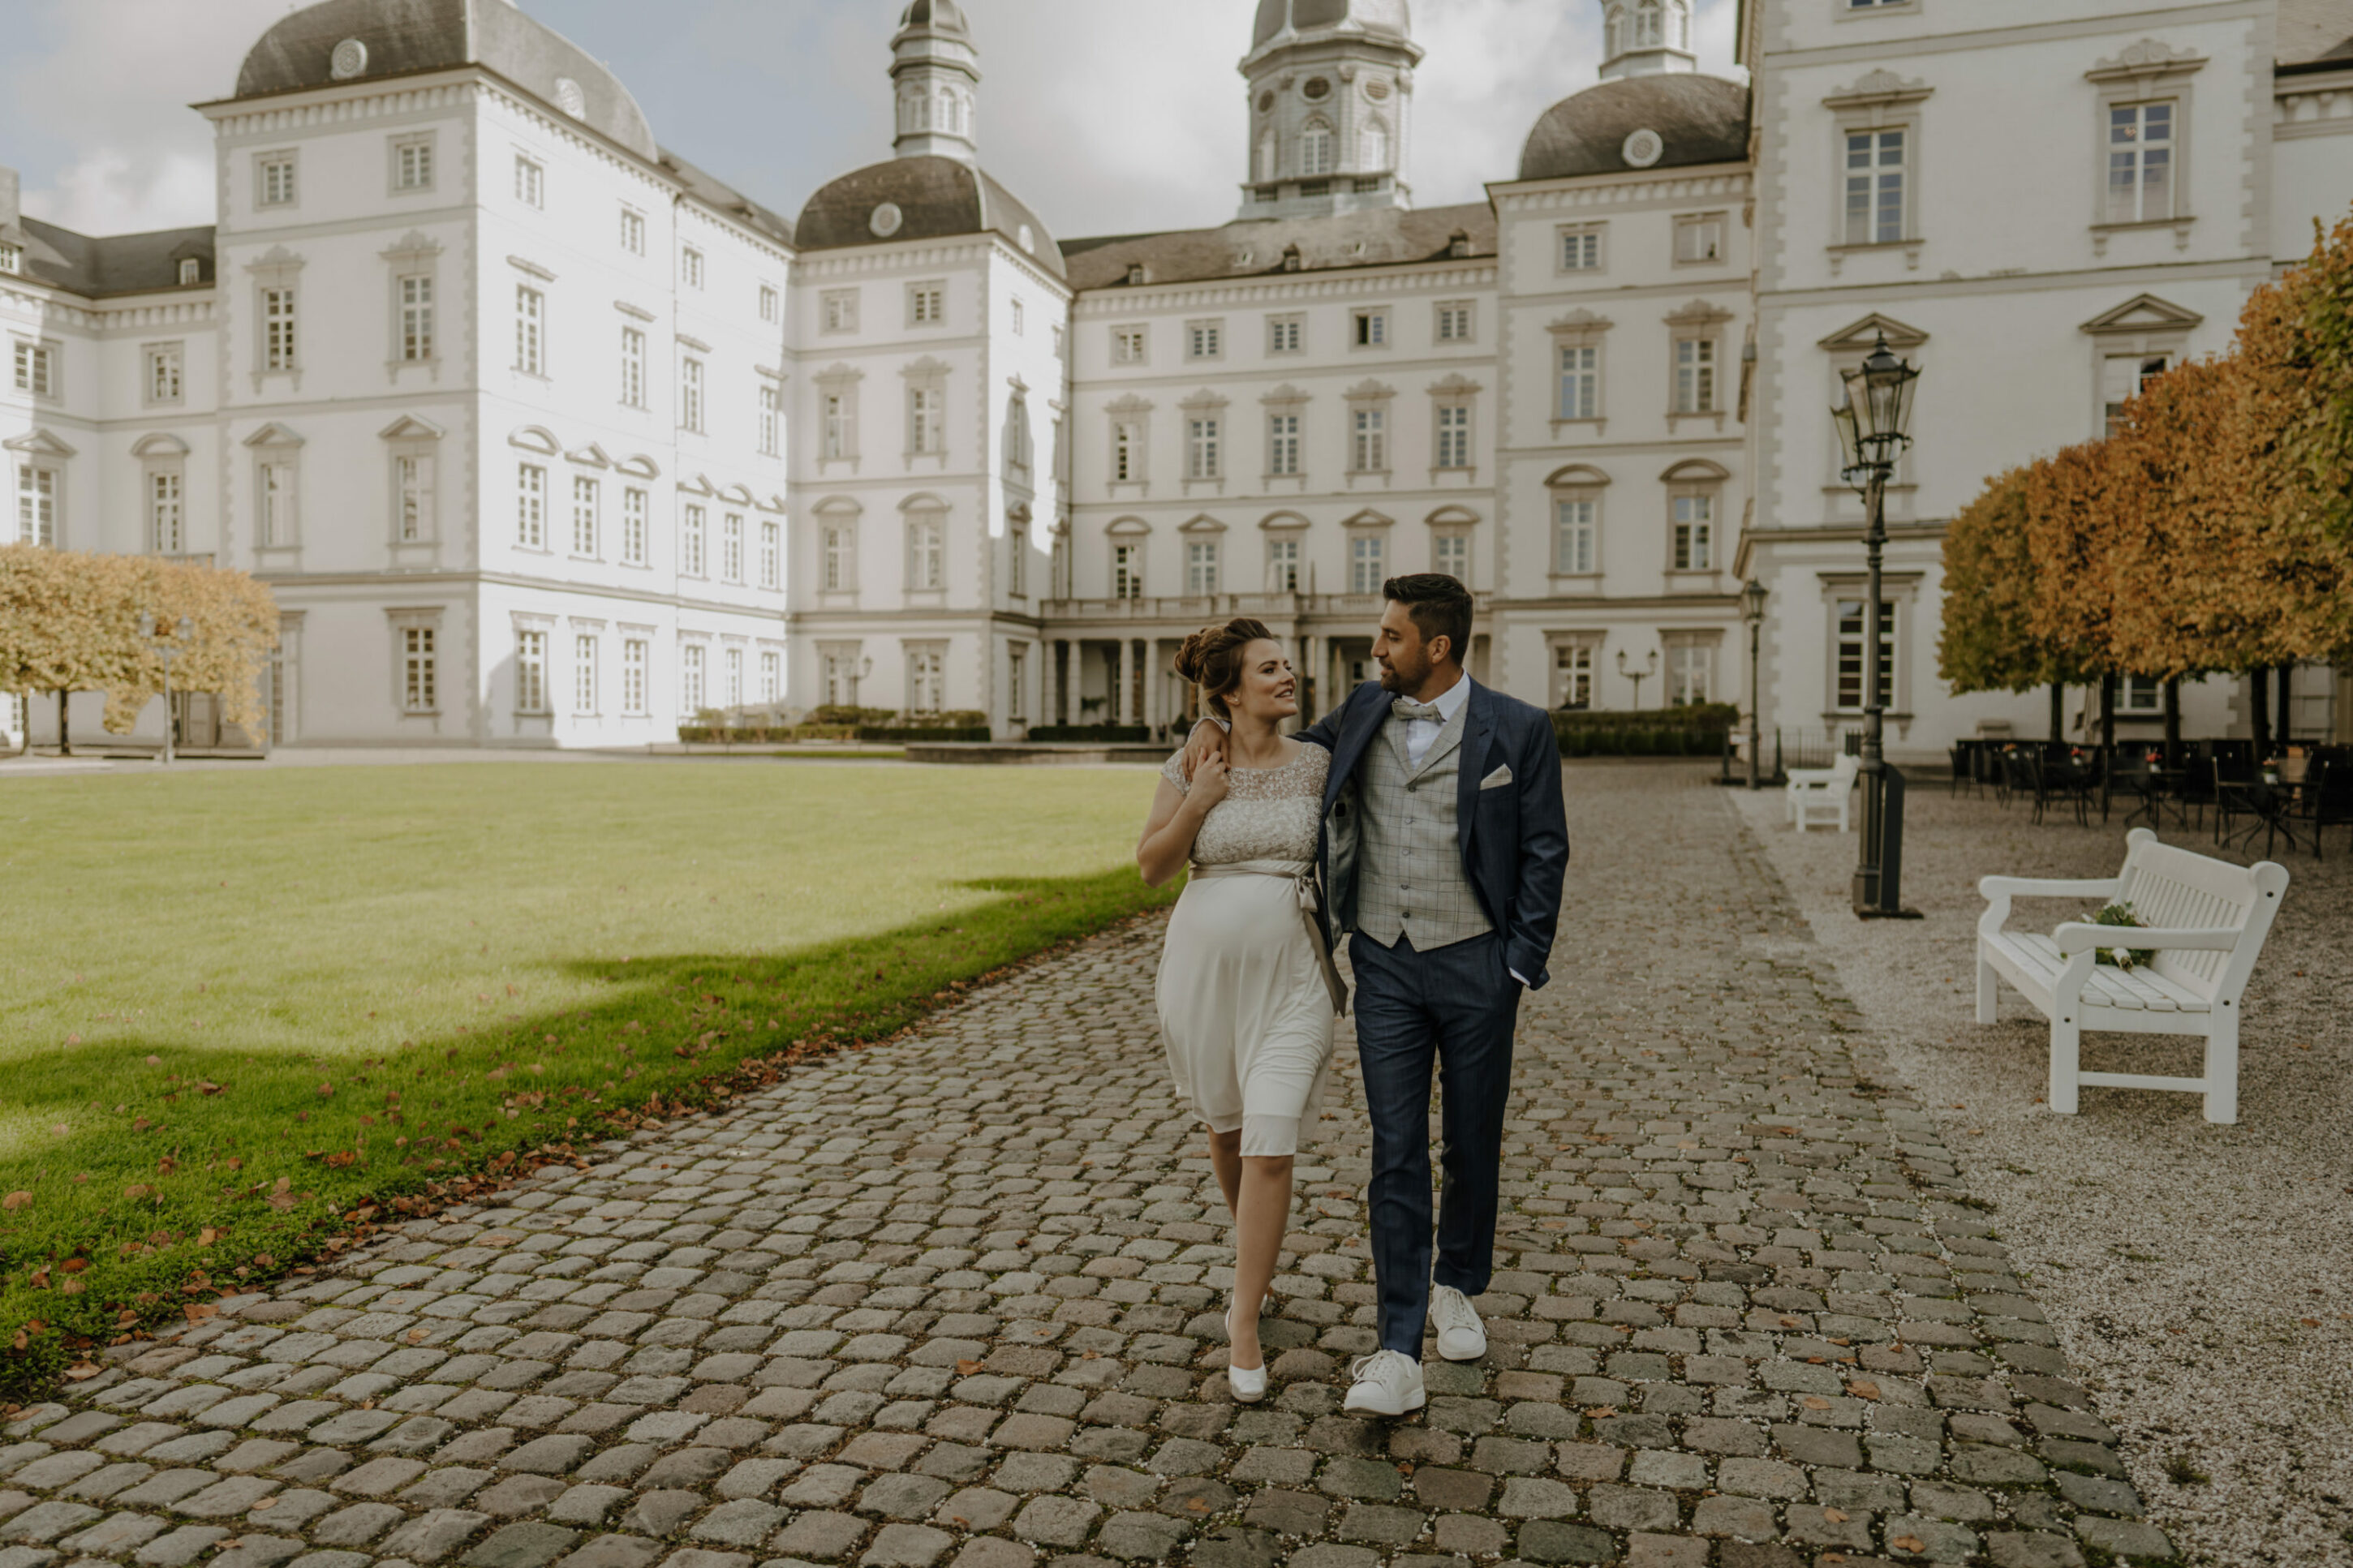 Hochzeitspaar gemeinsamer Spaziergang durch Schlosspark, schauen einander an